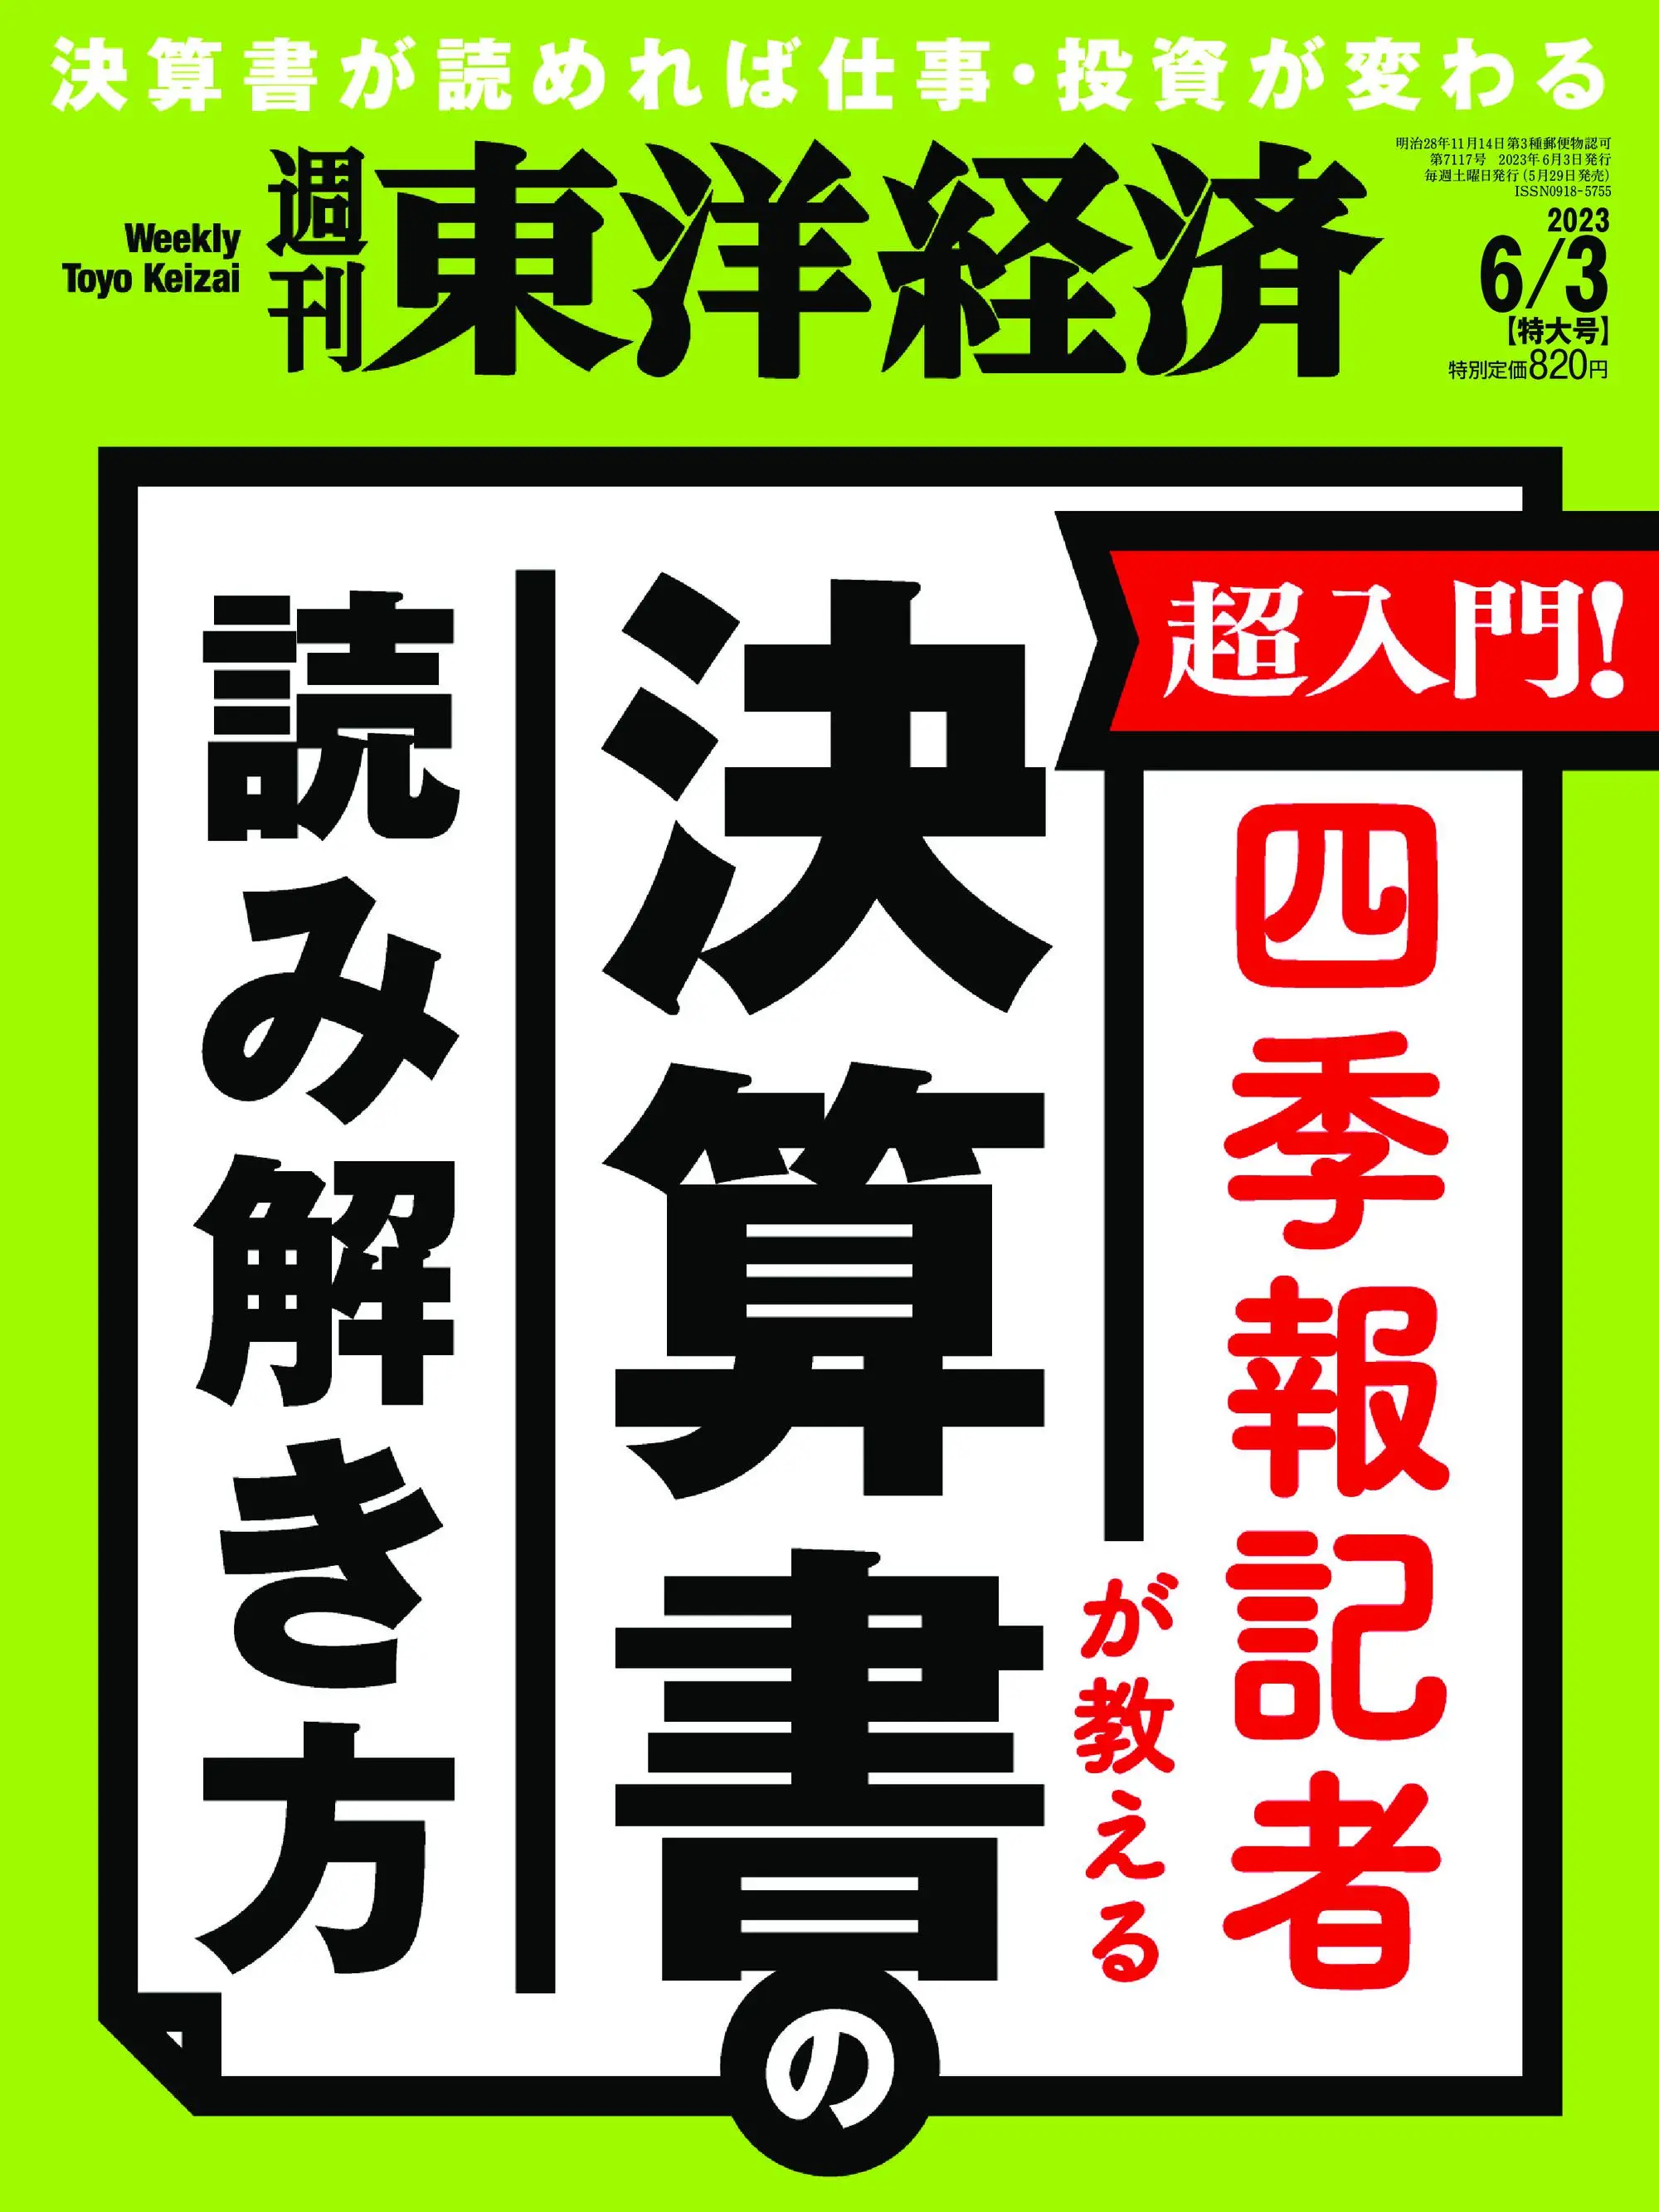 Weekly Toyo Keizai 週刊東洋経済 2023年6月3日